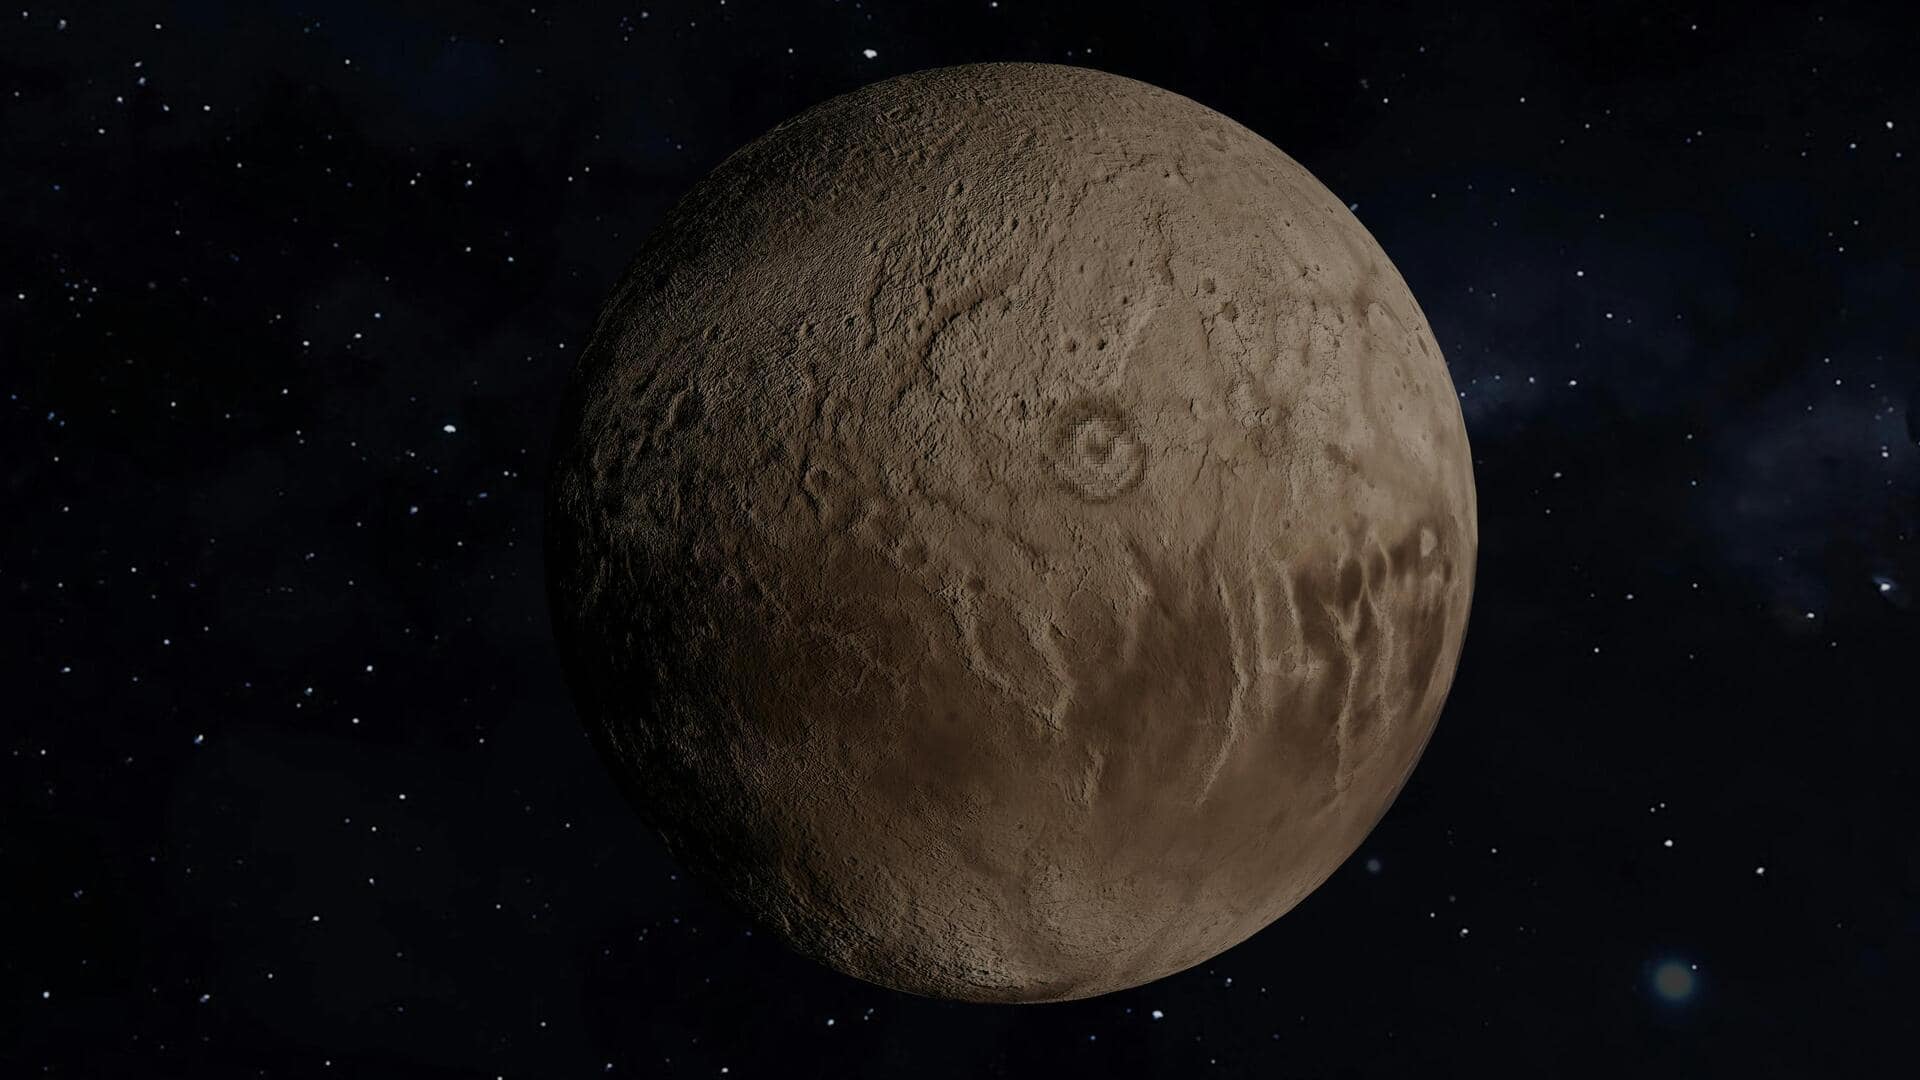 प्लूटो की बर्फीली सतह के नीचे छिपा हुआ है महासागर, खगोलविदों ने की खोज